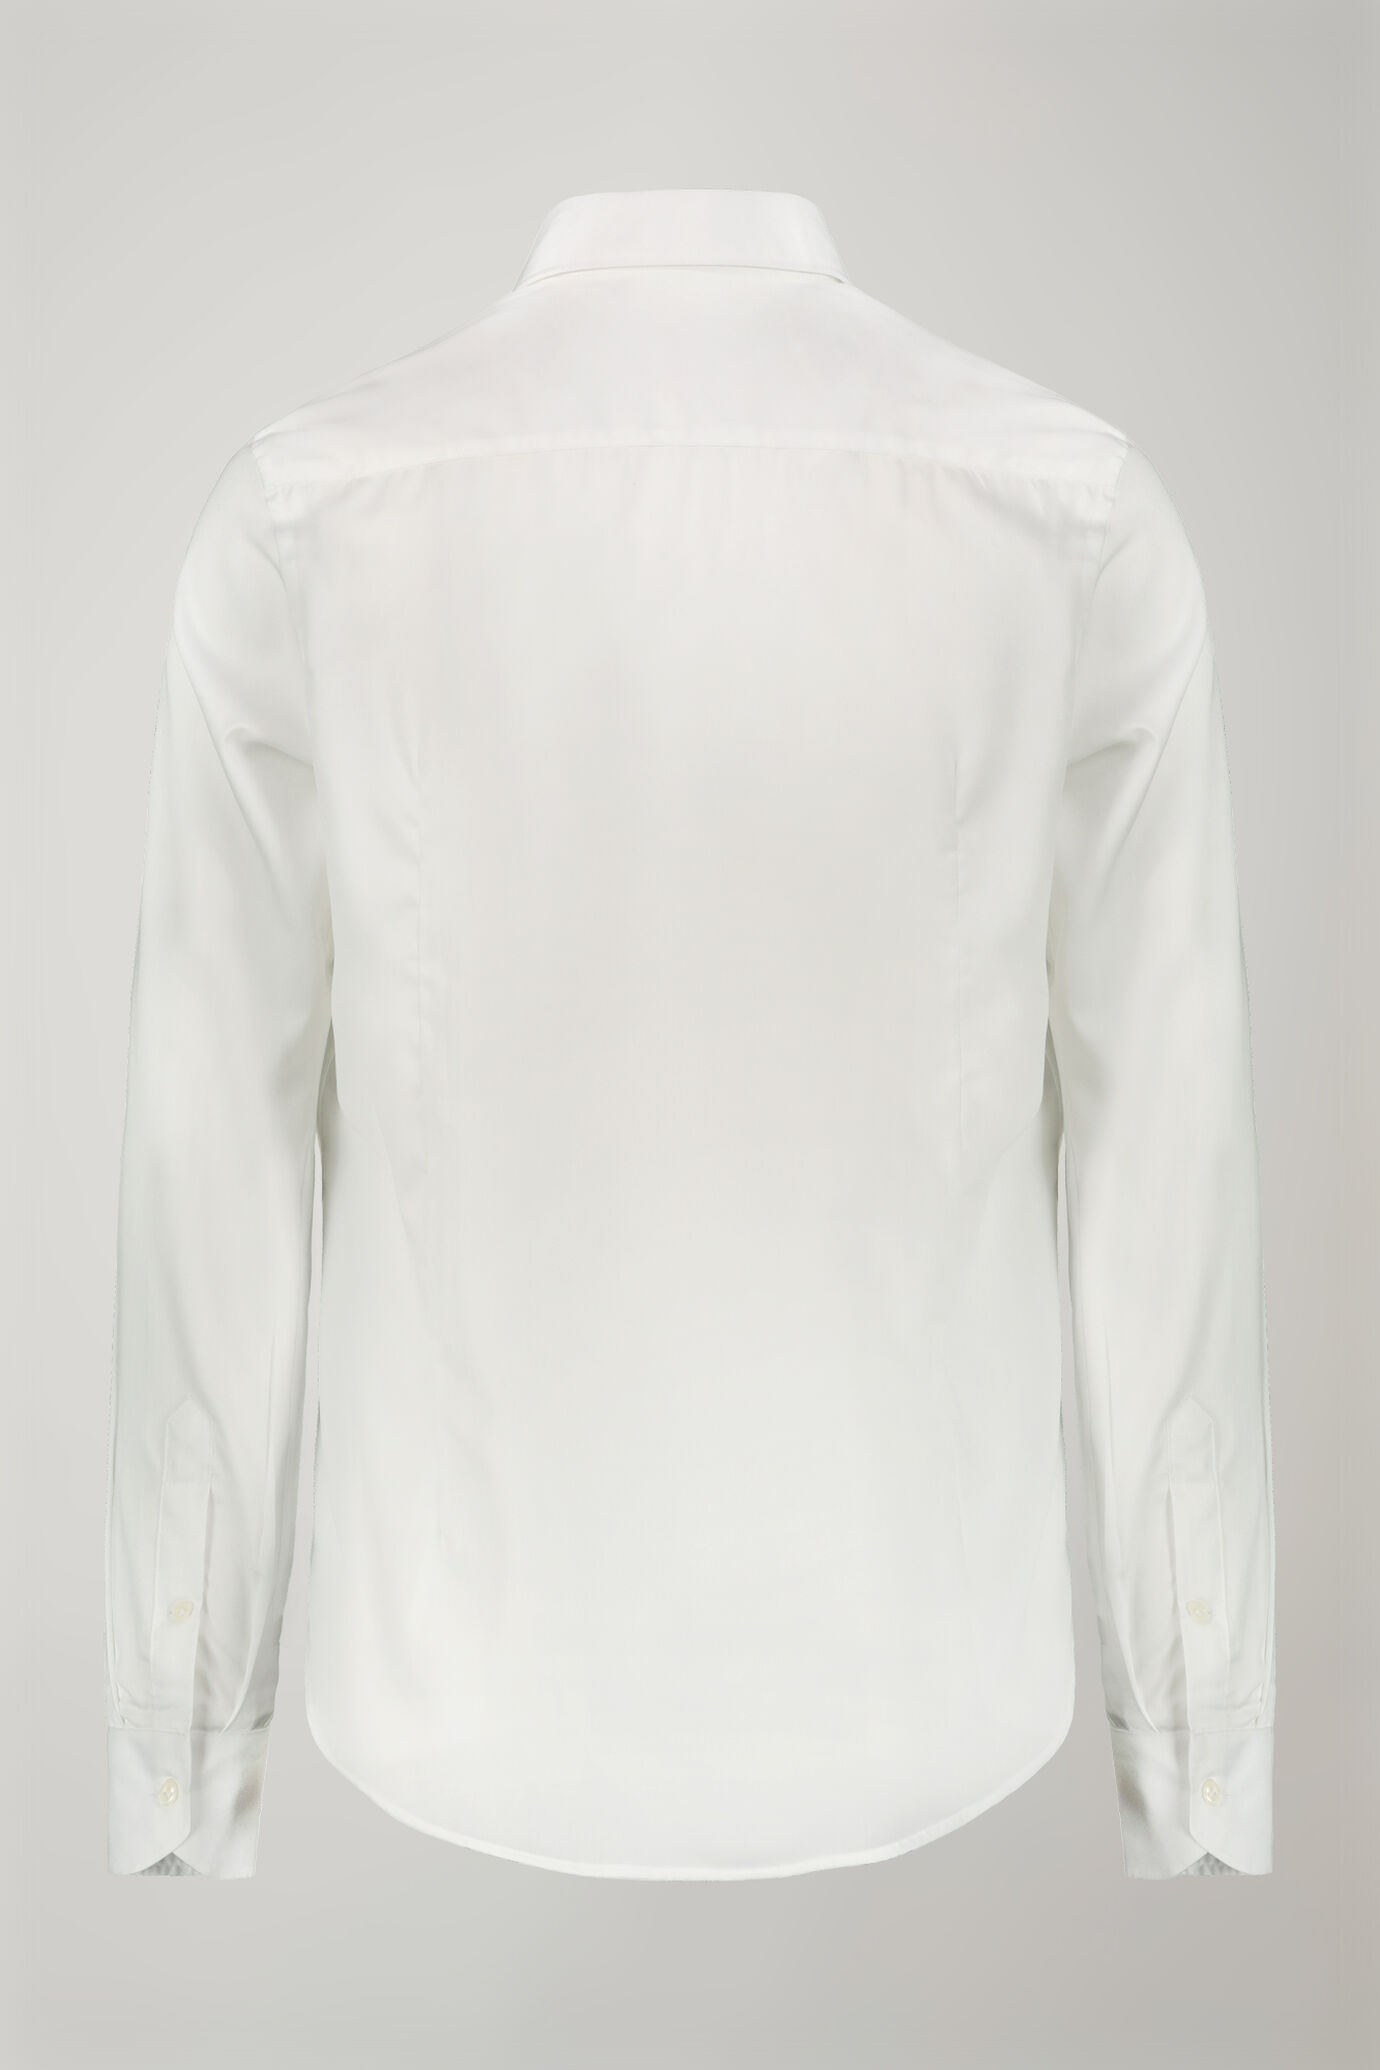 Men's shirt classic collar 100% cotton plain fabric regular fit image number 6